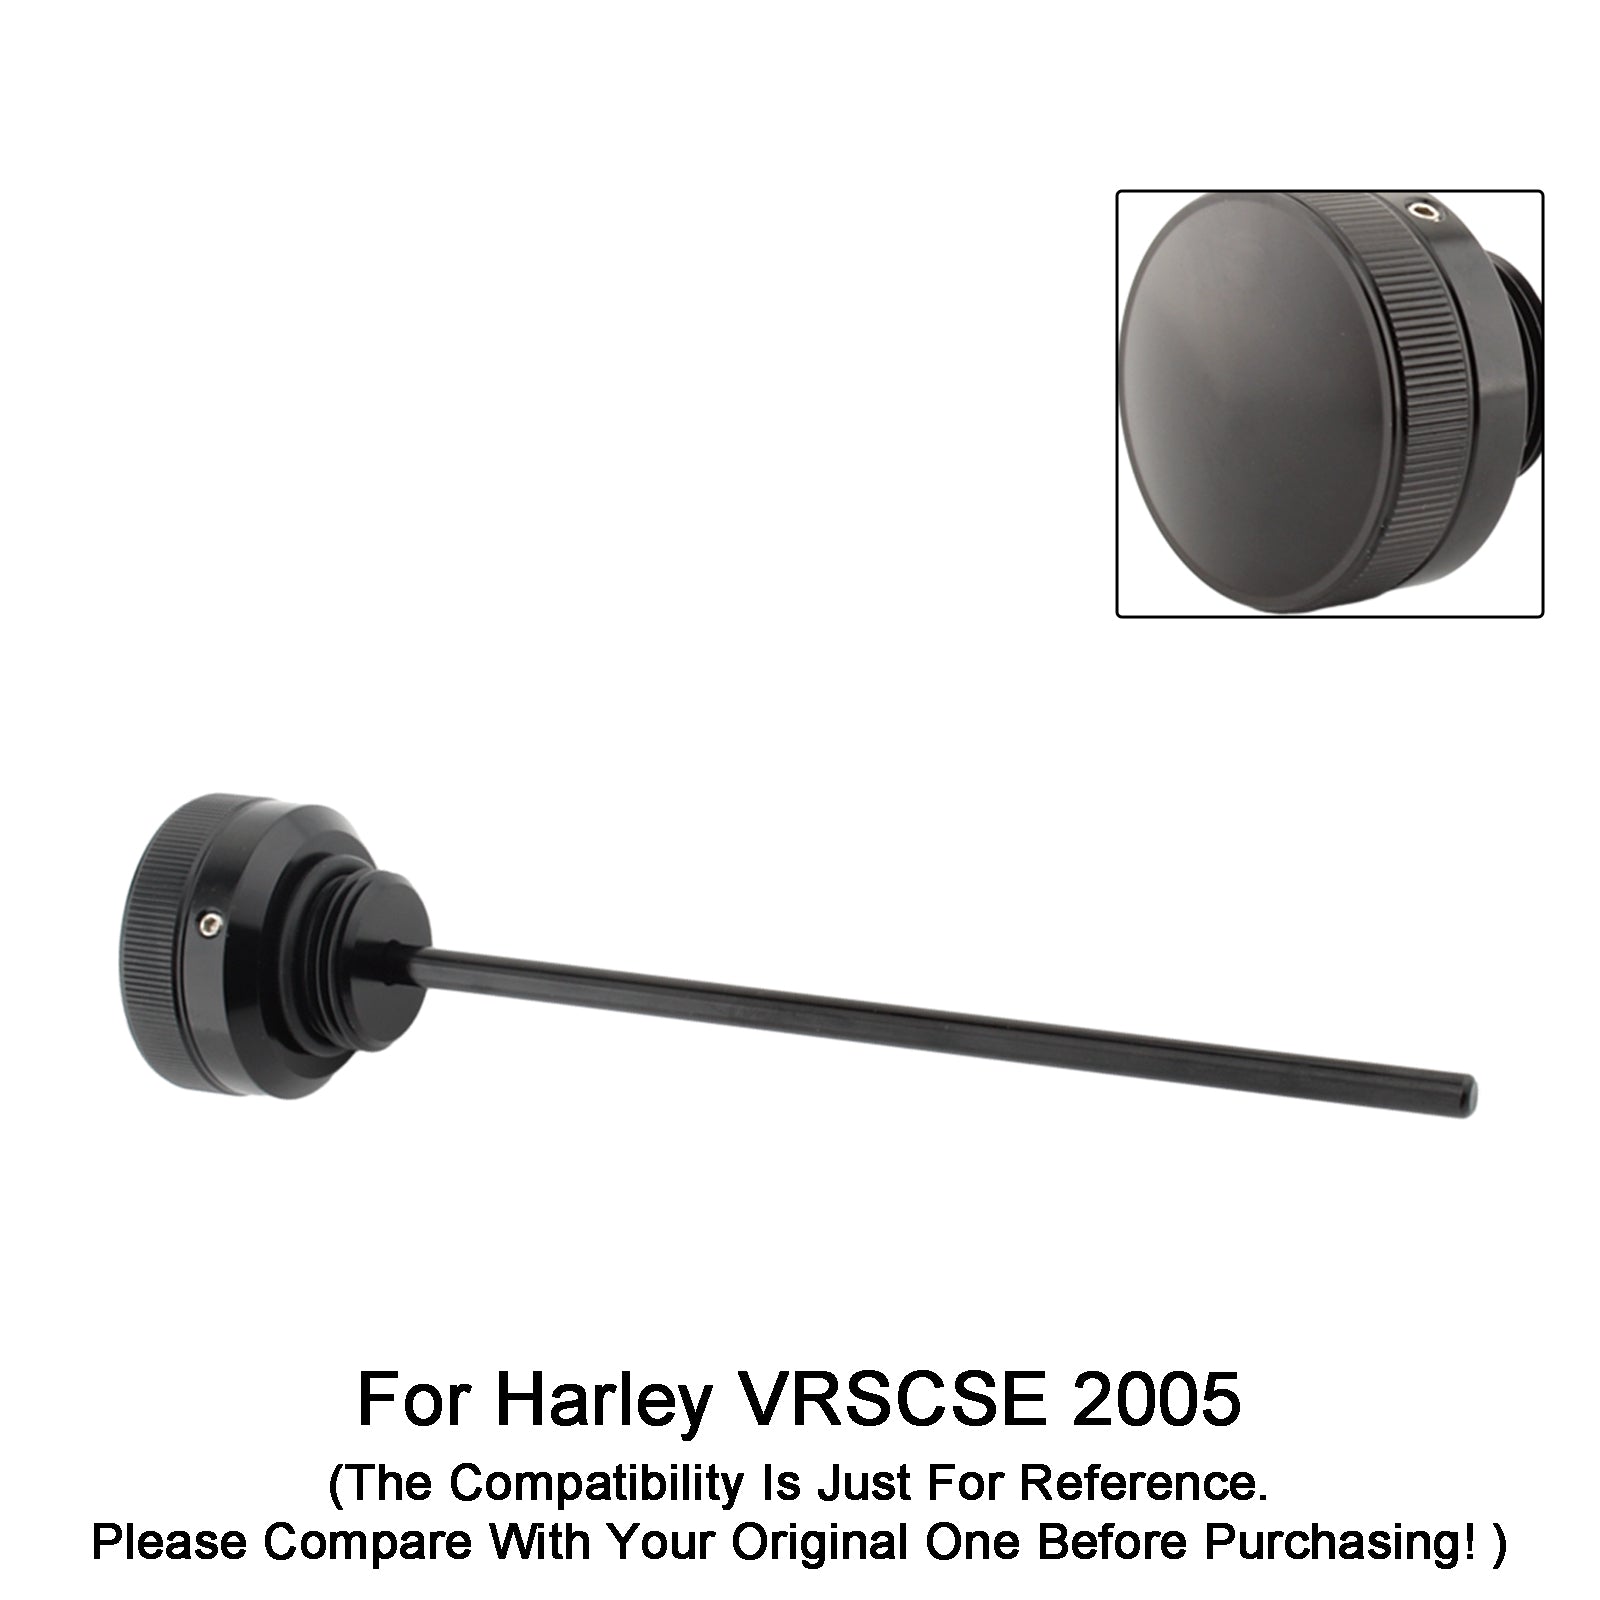 VRsca Harley Vrscb Vrscd Vrscse Vrscaw Oil Dipstick Tank Cap Plug